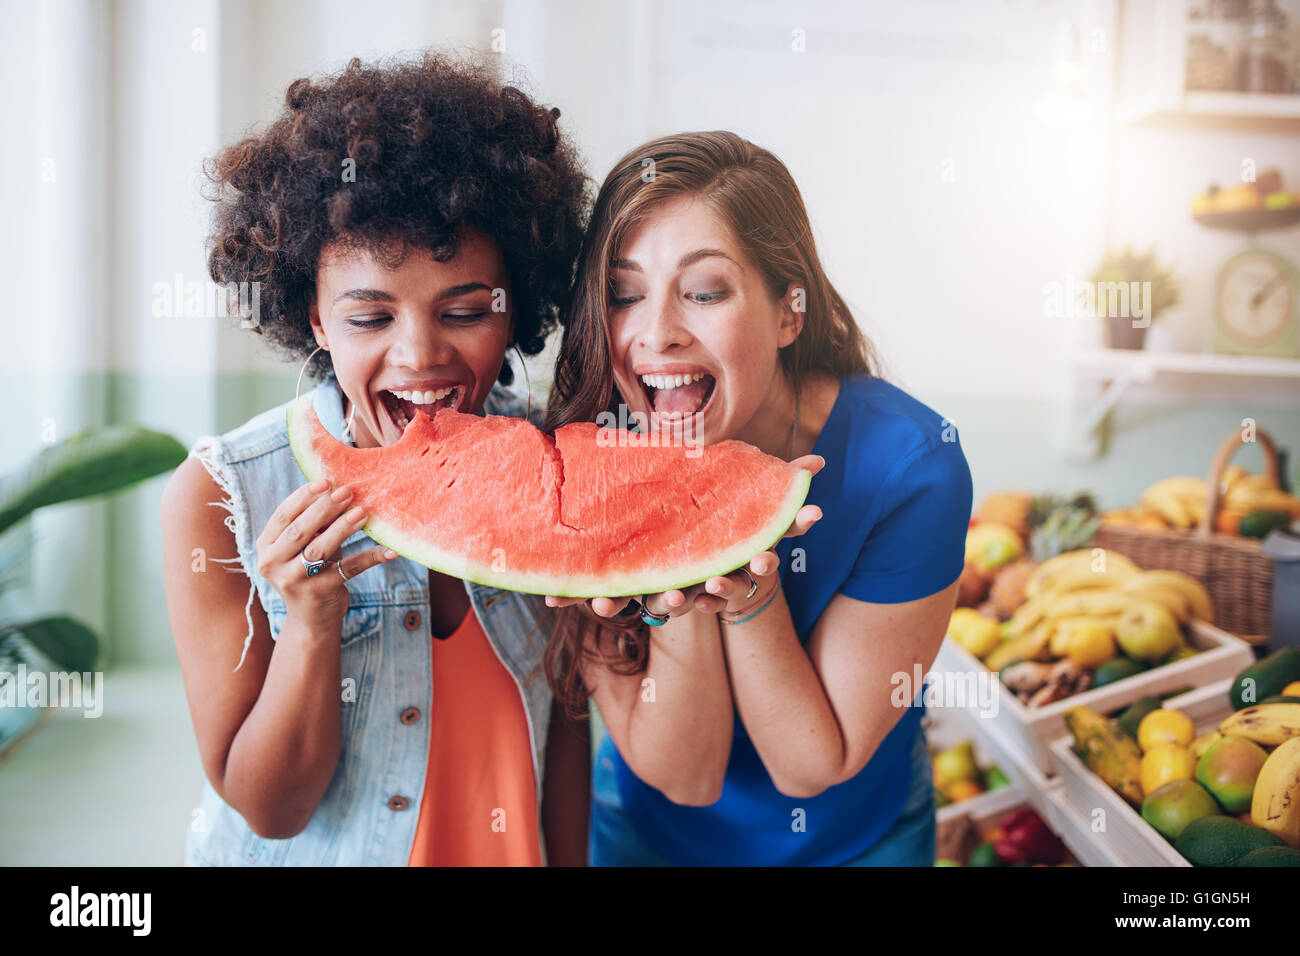 Portrait of cheerful young femmes prenant une bouchée d'une pastèque. Femme debout amis réunis lors d'un bar à jus de fruits manger watermelo Banque D'Images